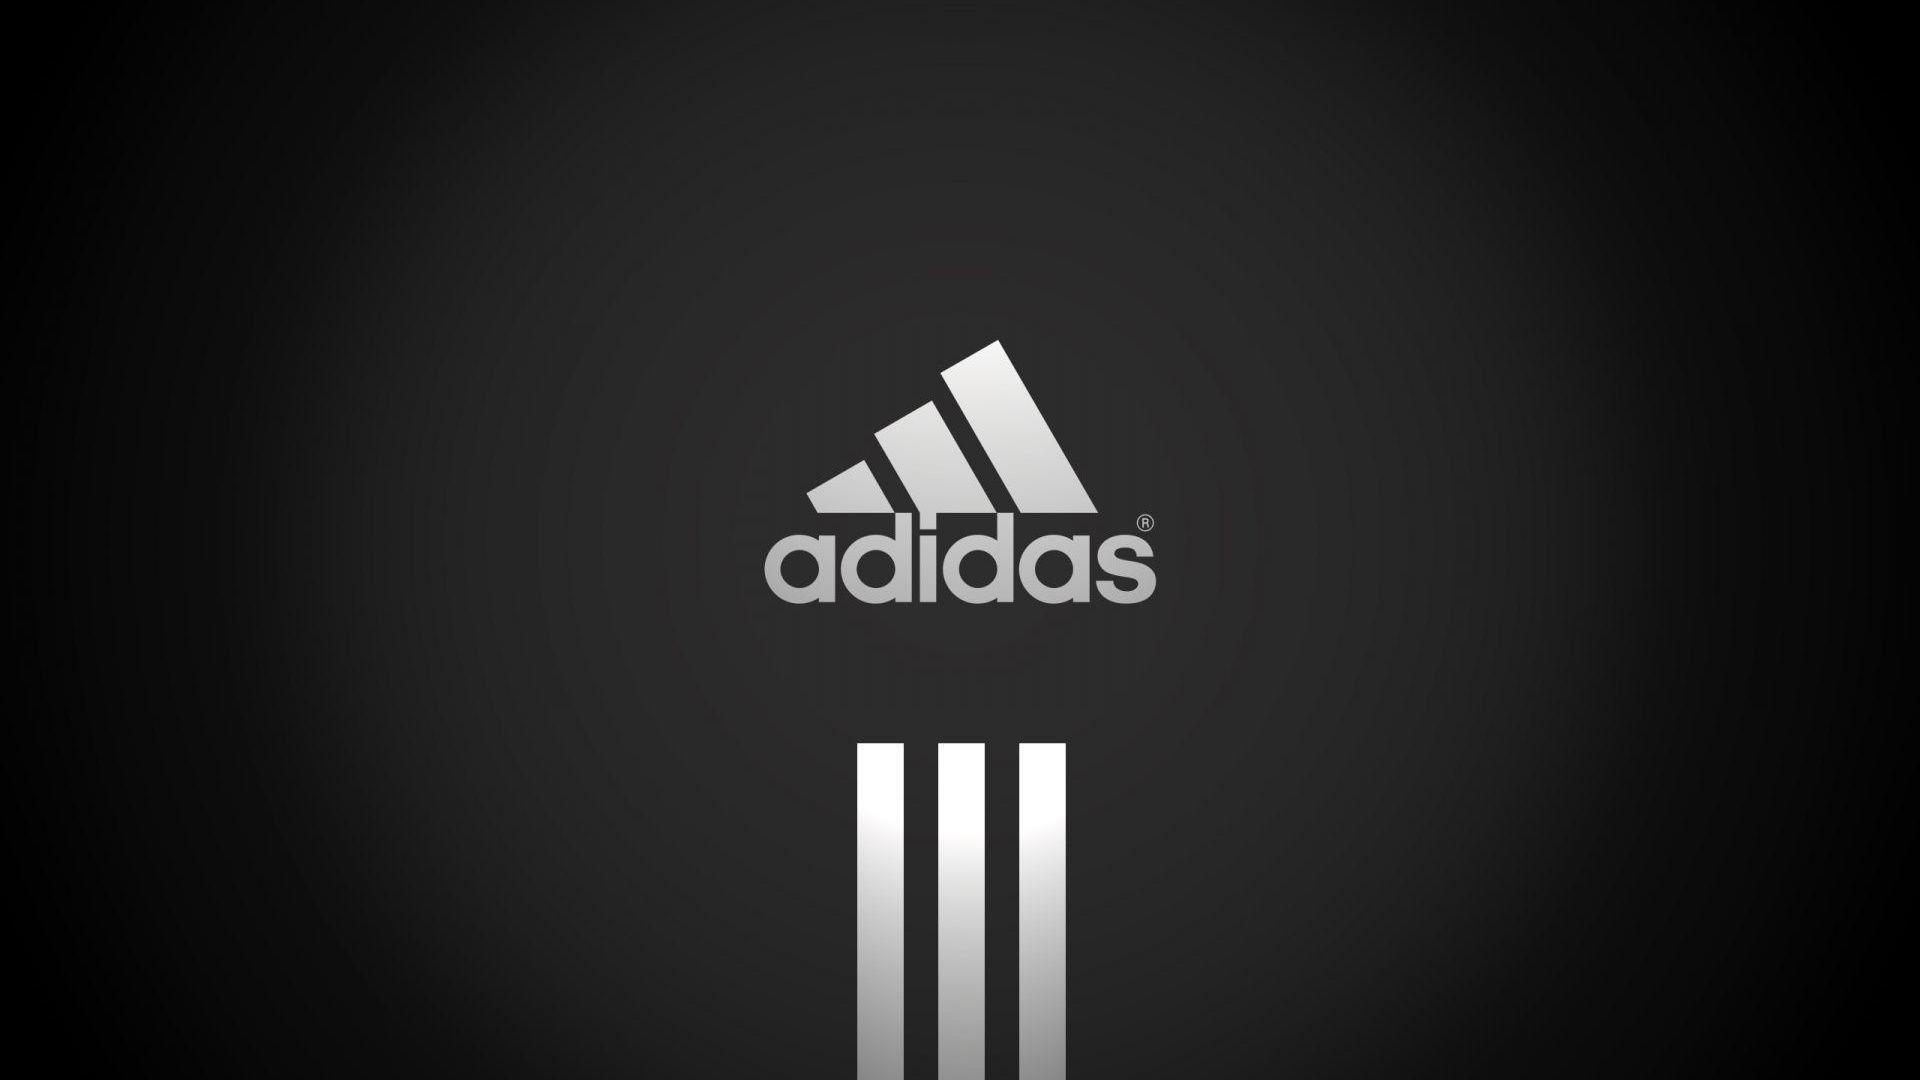 Cool Nike Logo Wallpaper